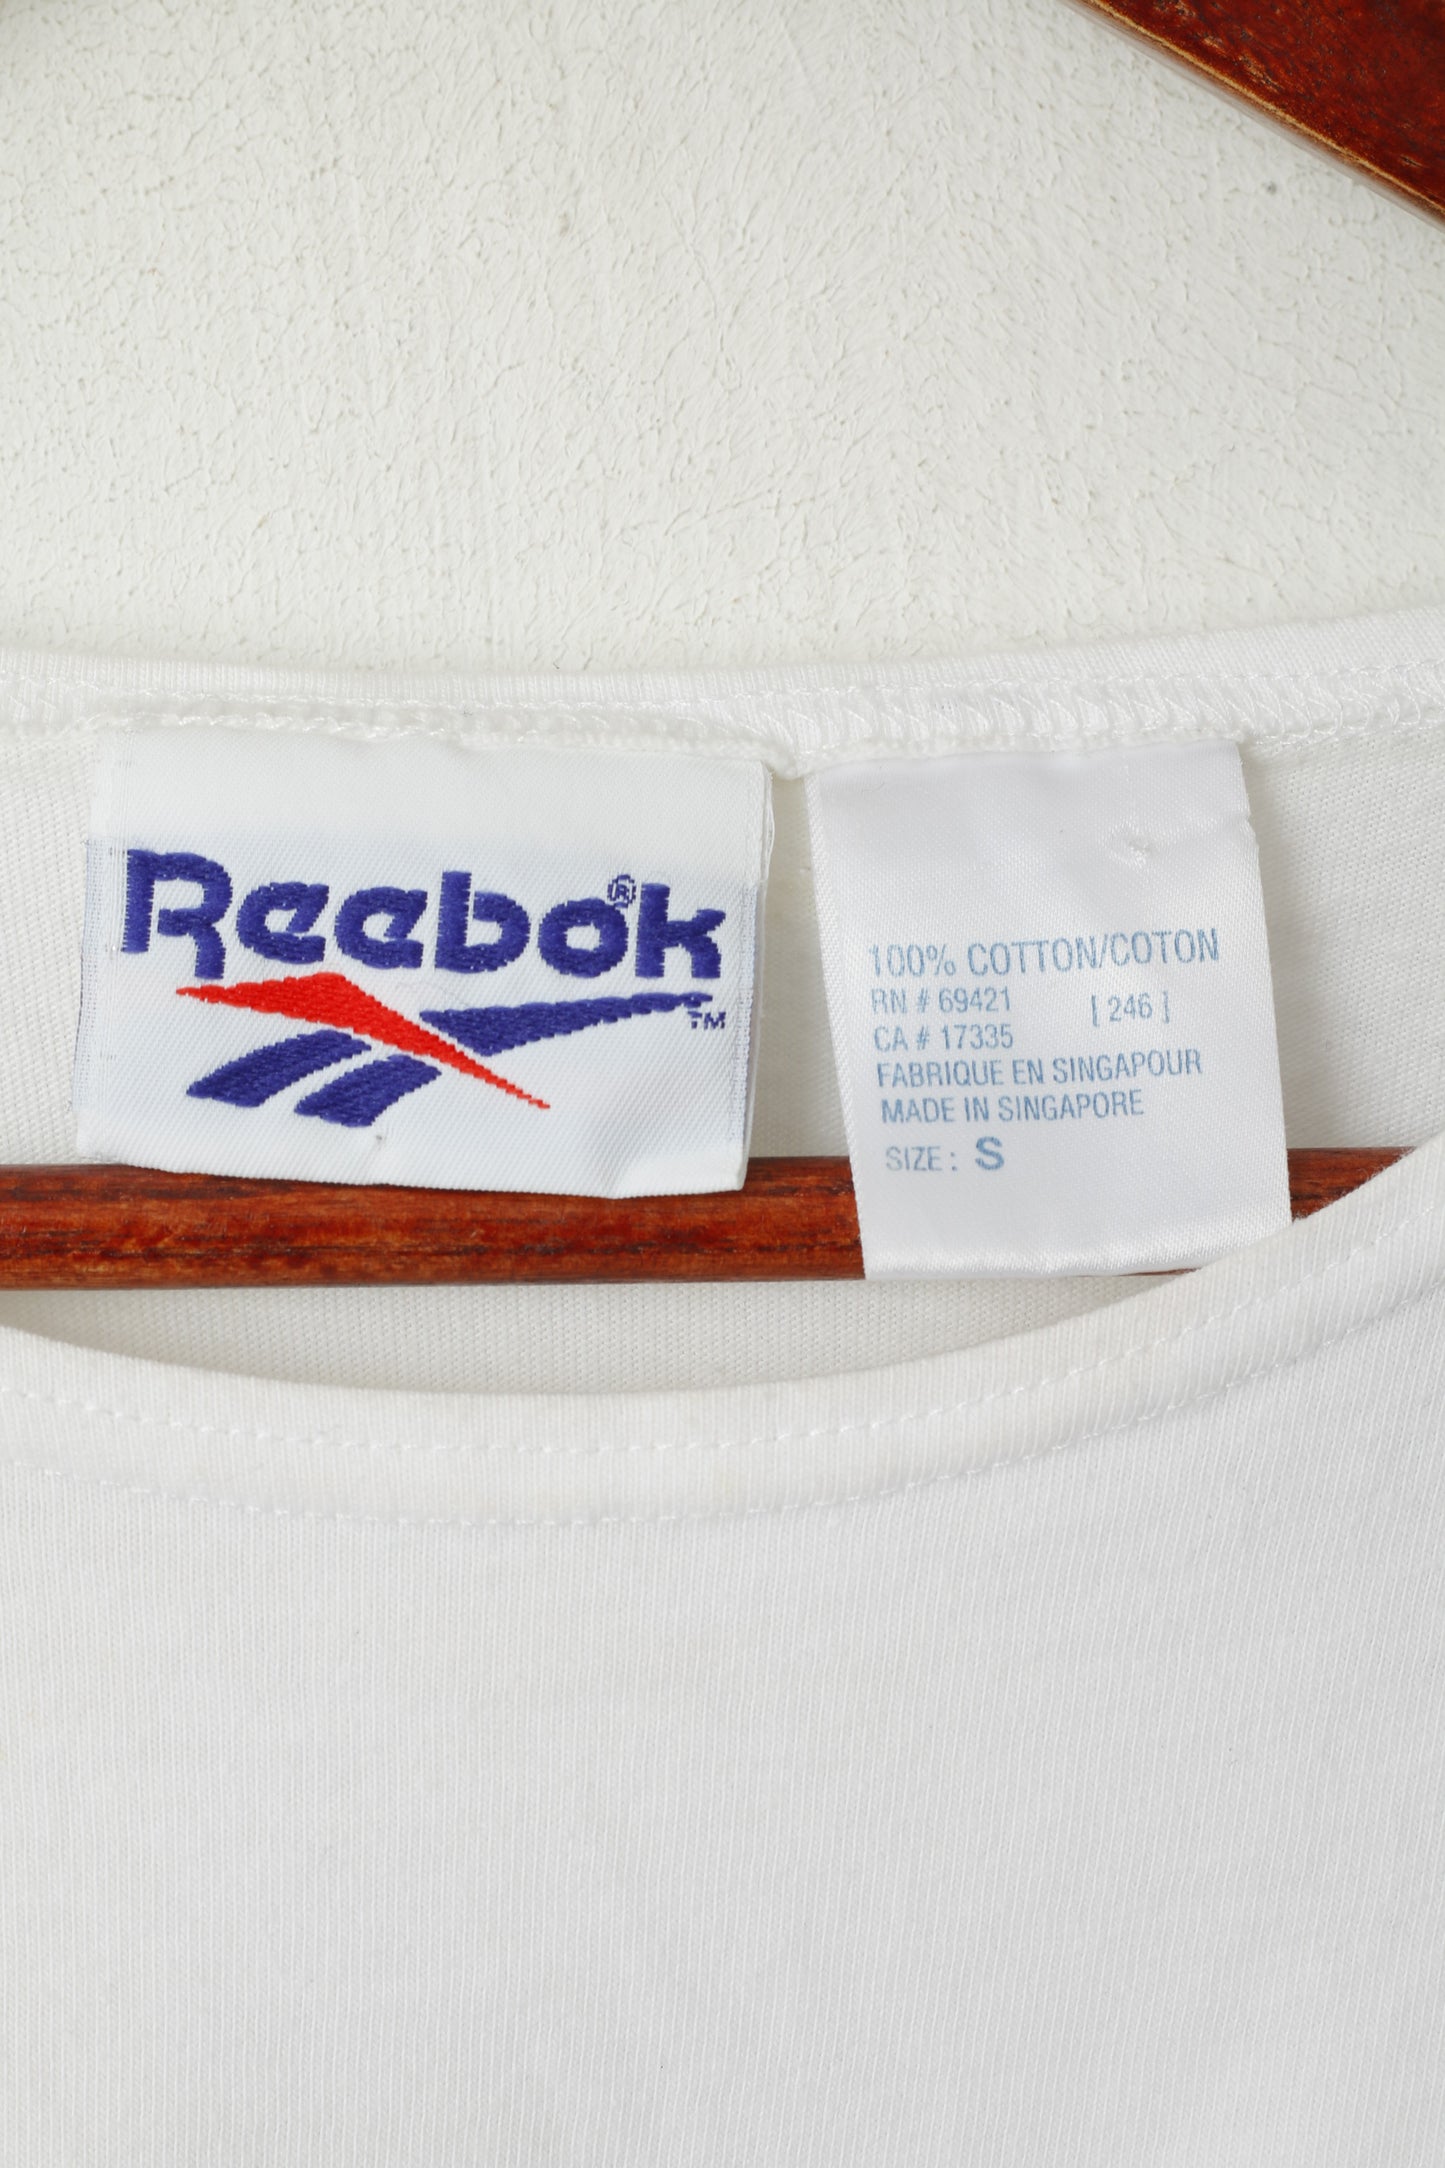 Maglietta Reebok da donna, top classico sportivo senza maniche vintage in cotone bianco